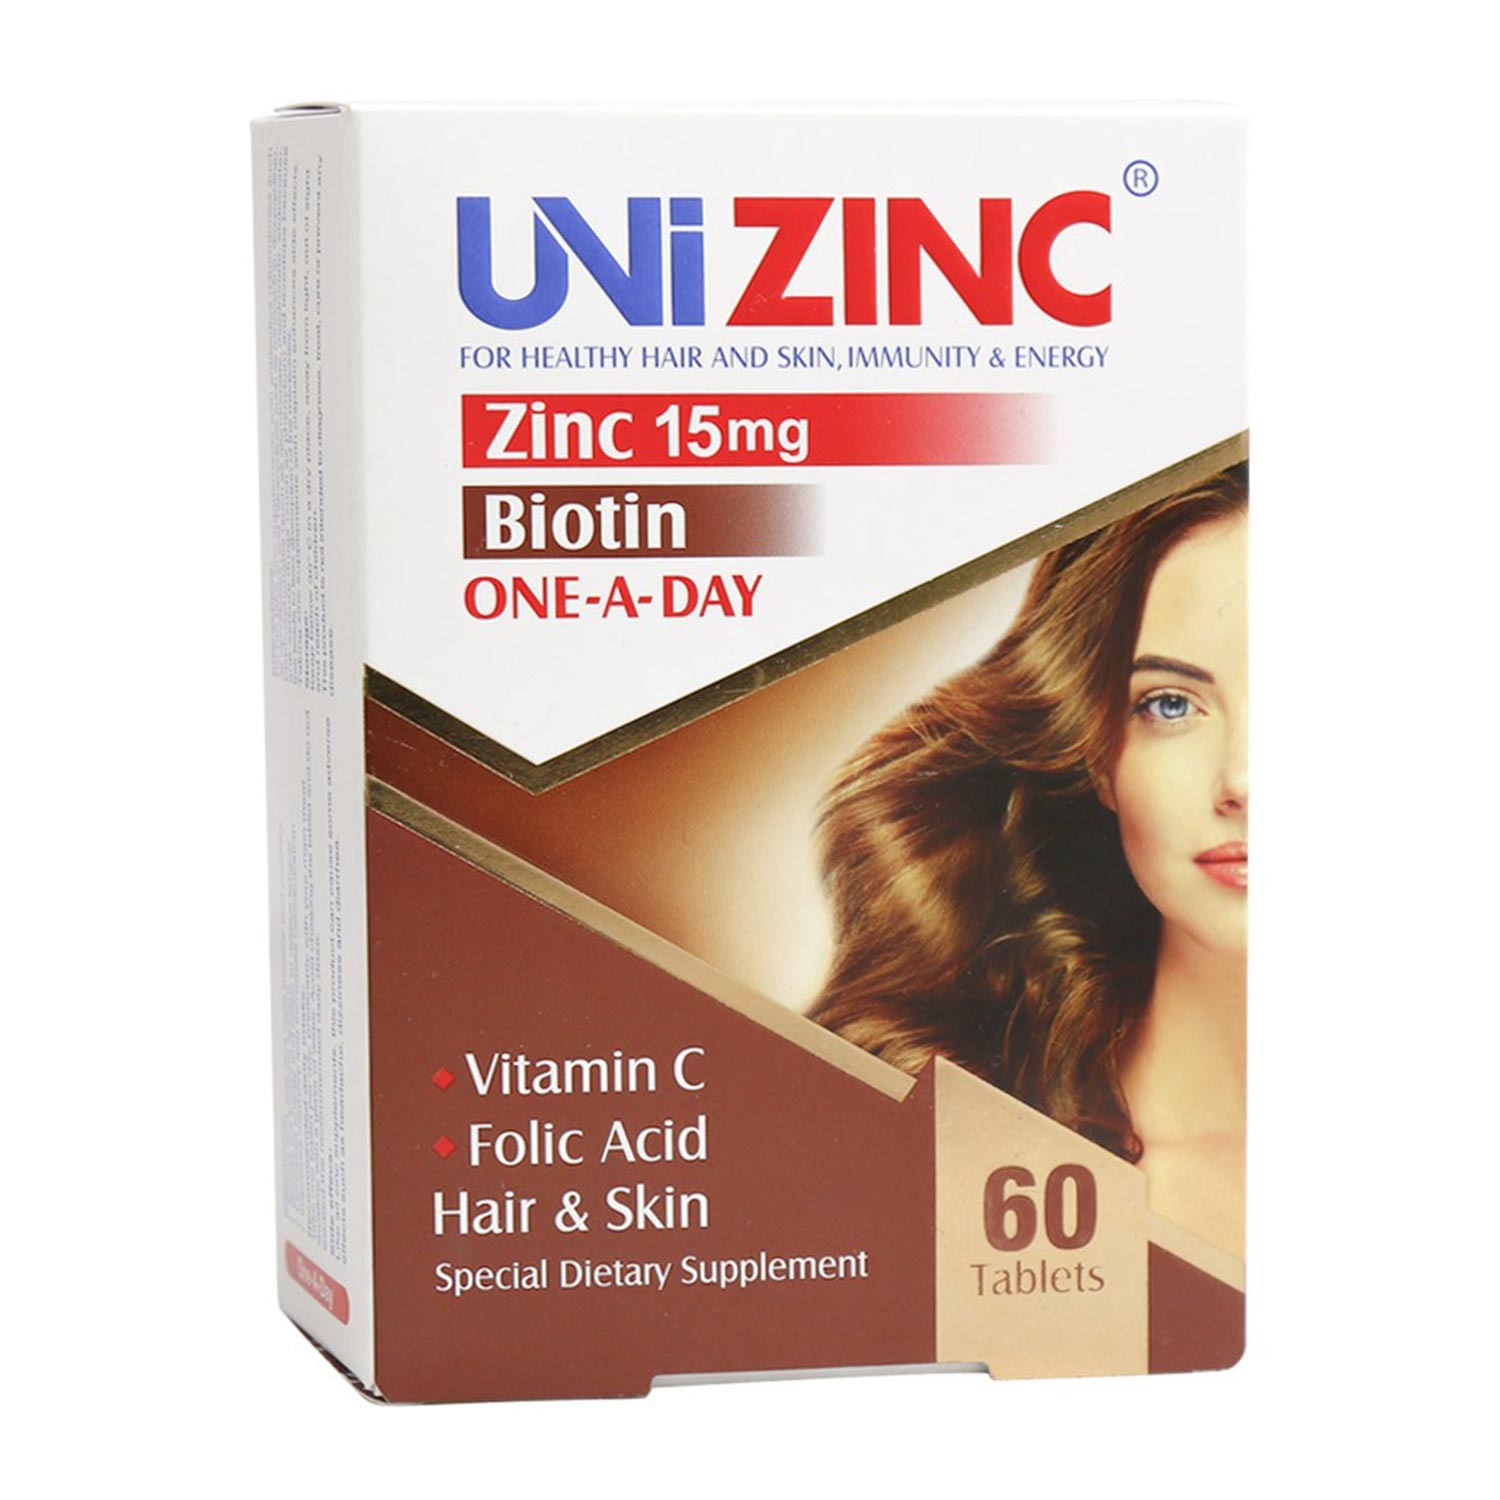 قرص یونی زینک (Uni Zinc) تقویت کننده پوست و مو